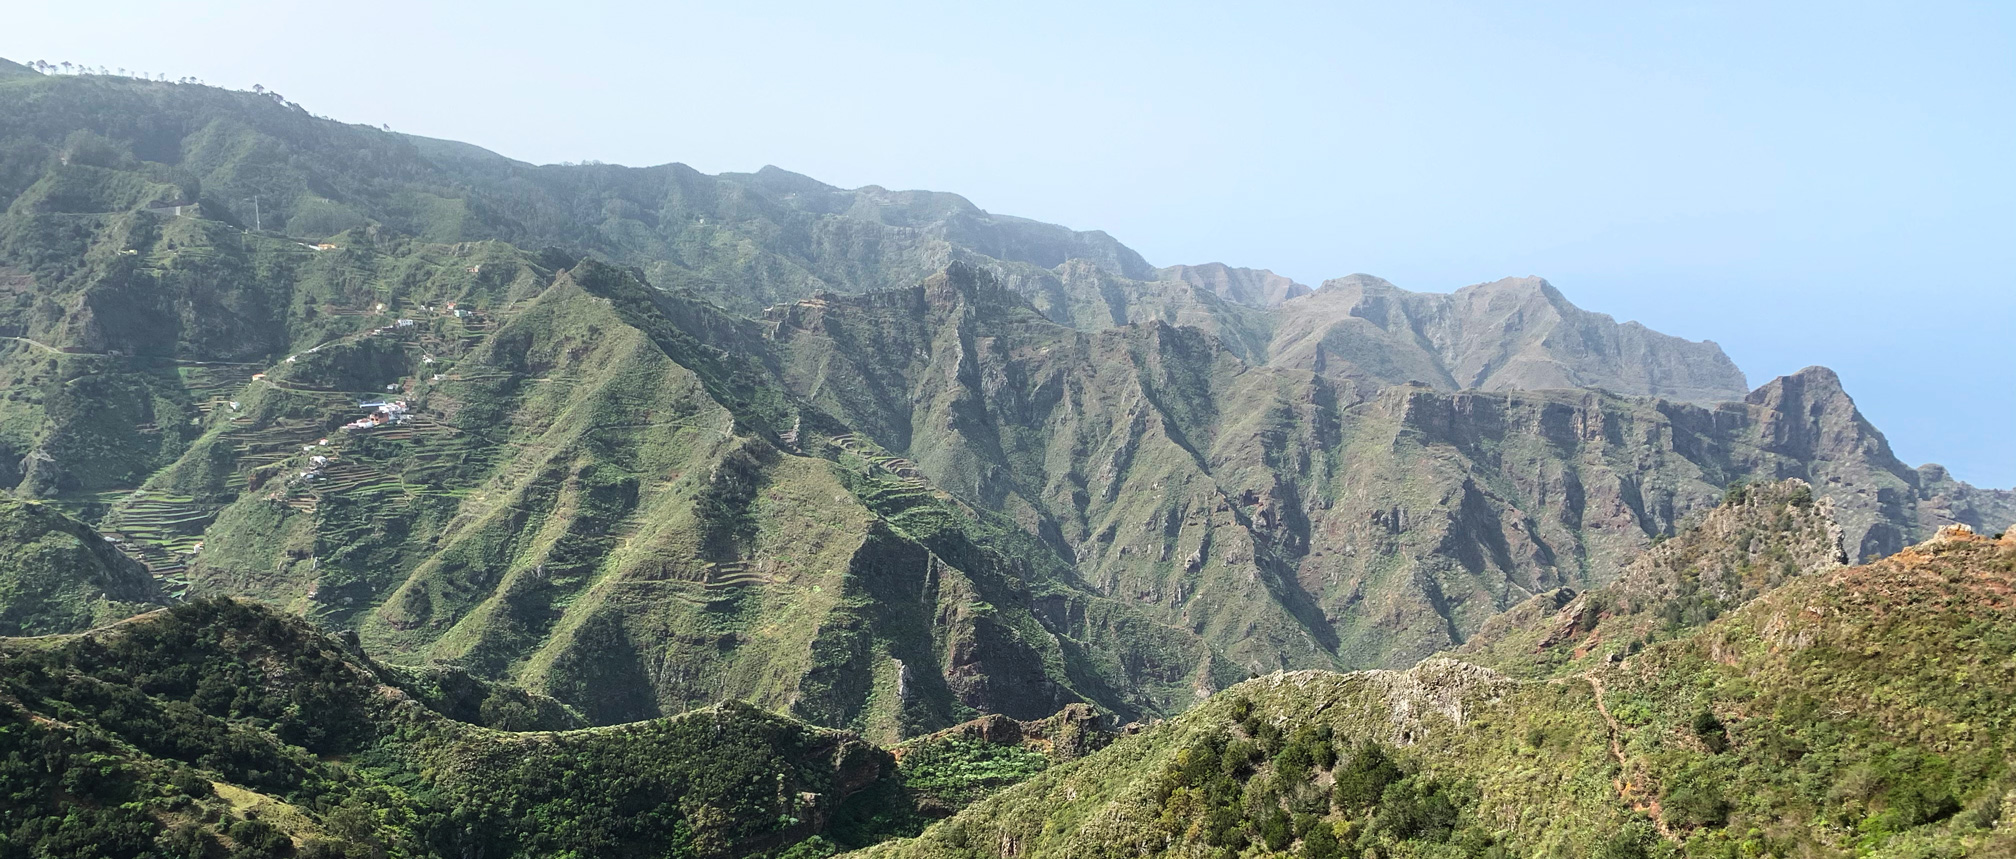 Islas Canarias, Tenerife: Parque Rural de Anaga. Ruta circular de Las Carboneras - Chinamada